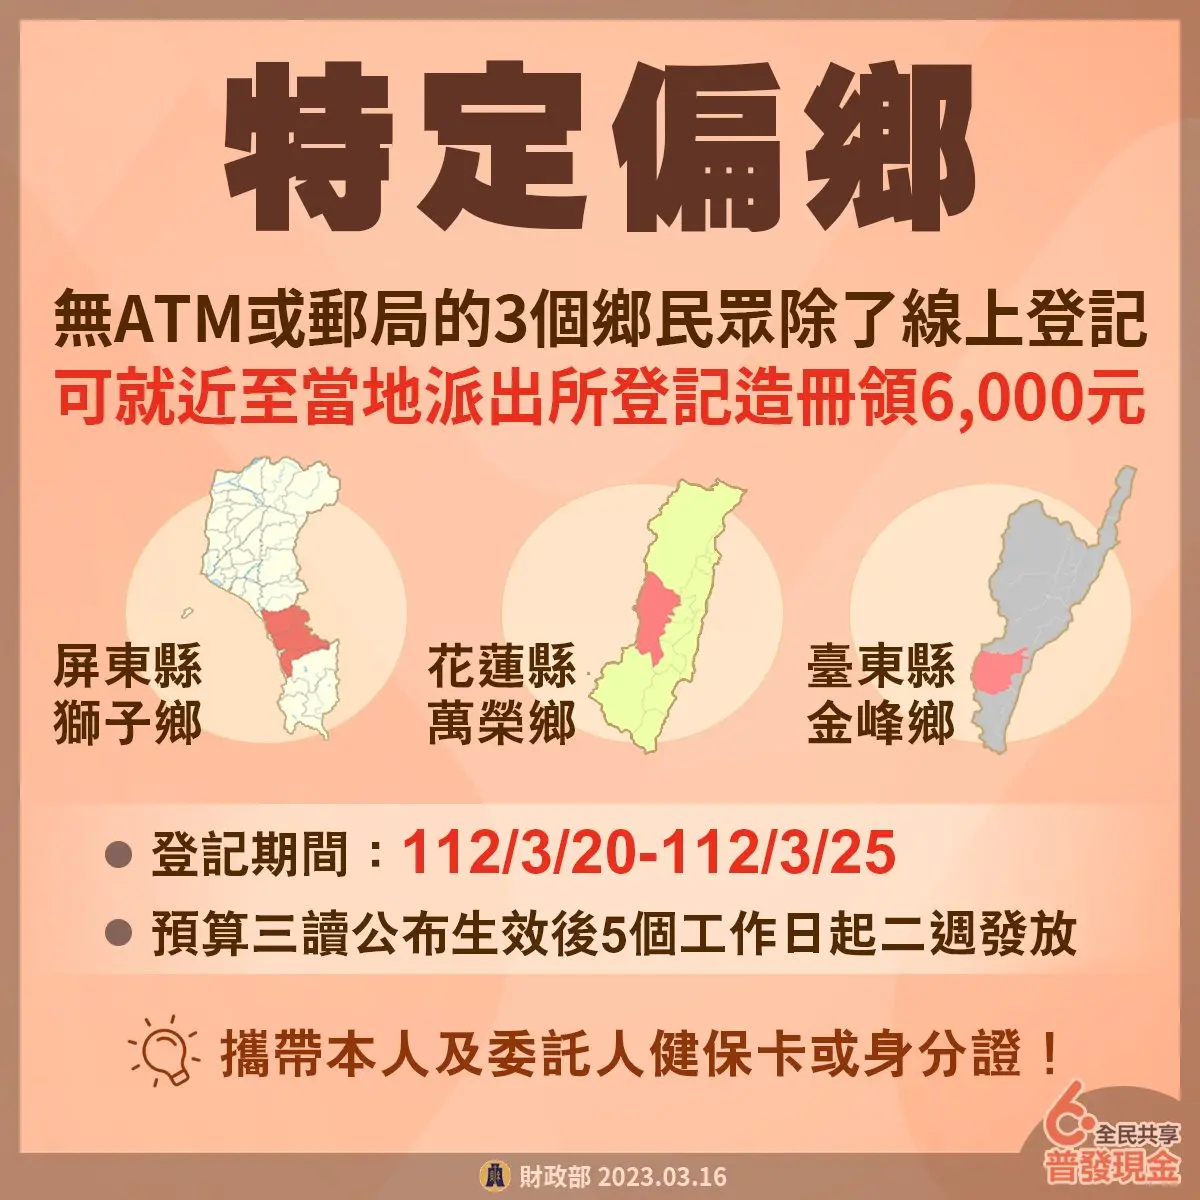 taiwan national cash 6000 yuan 2023 a7